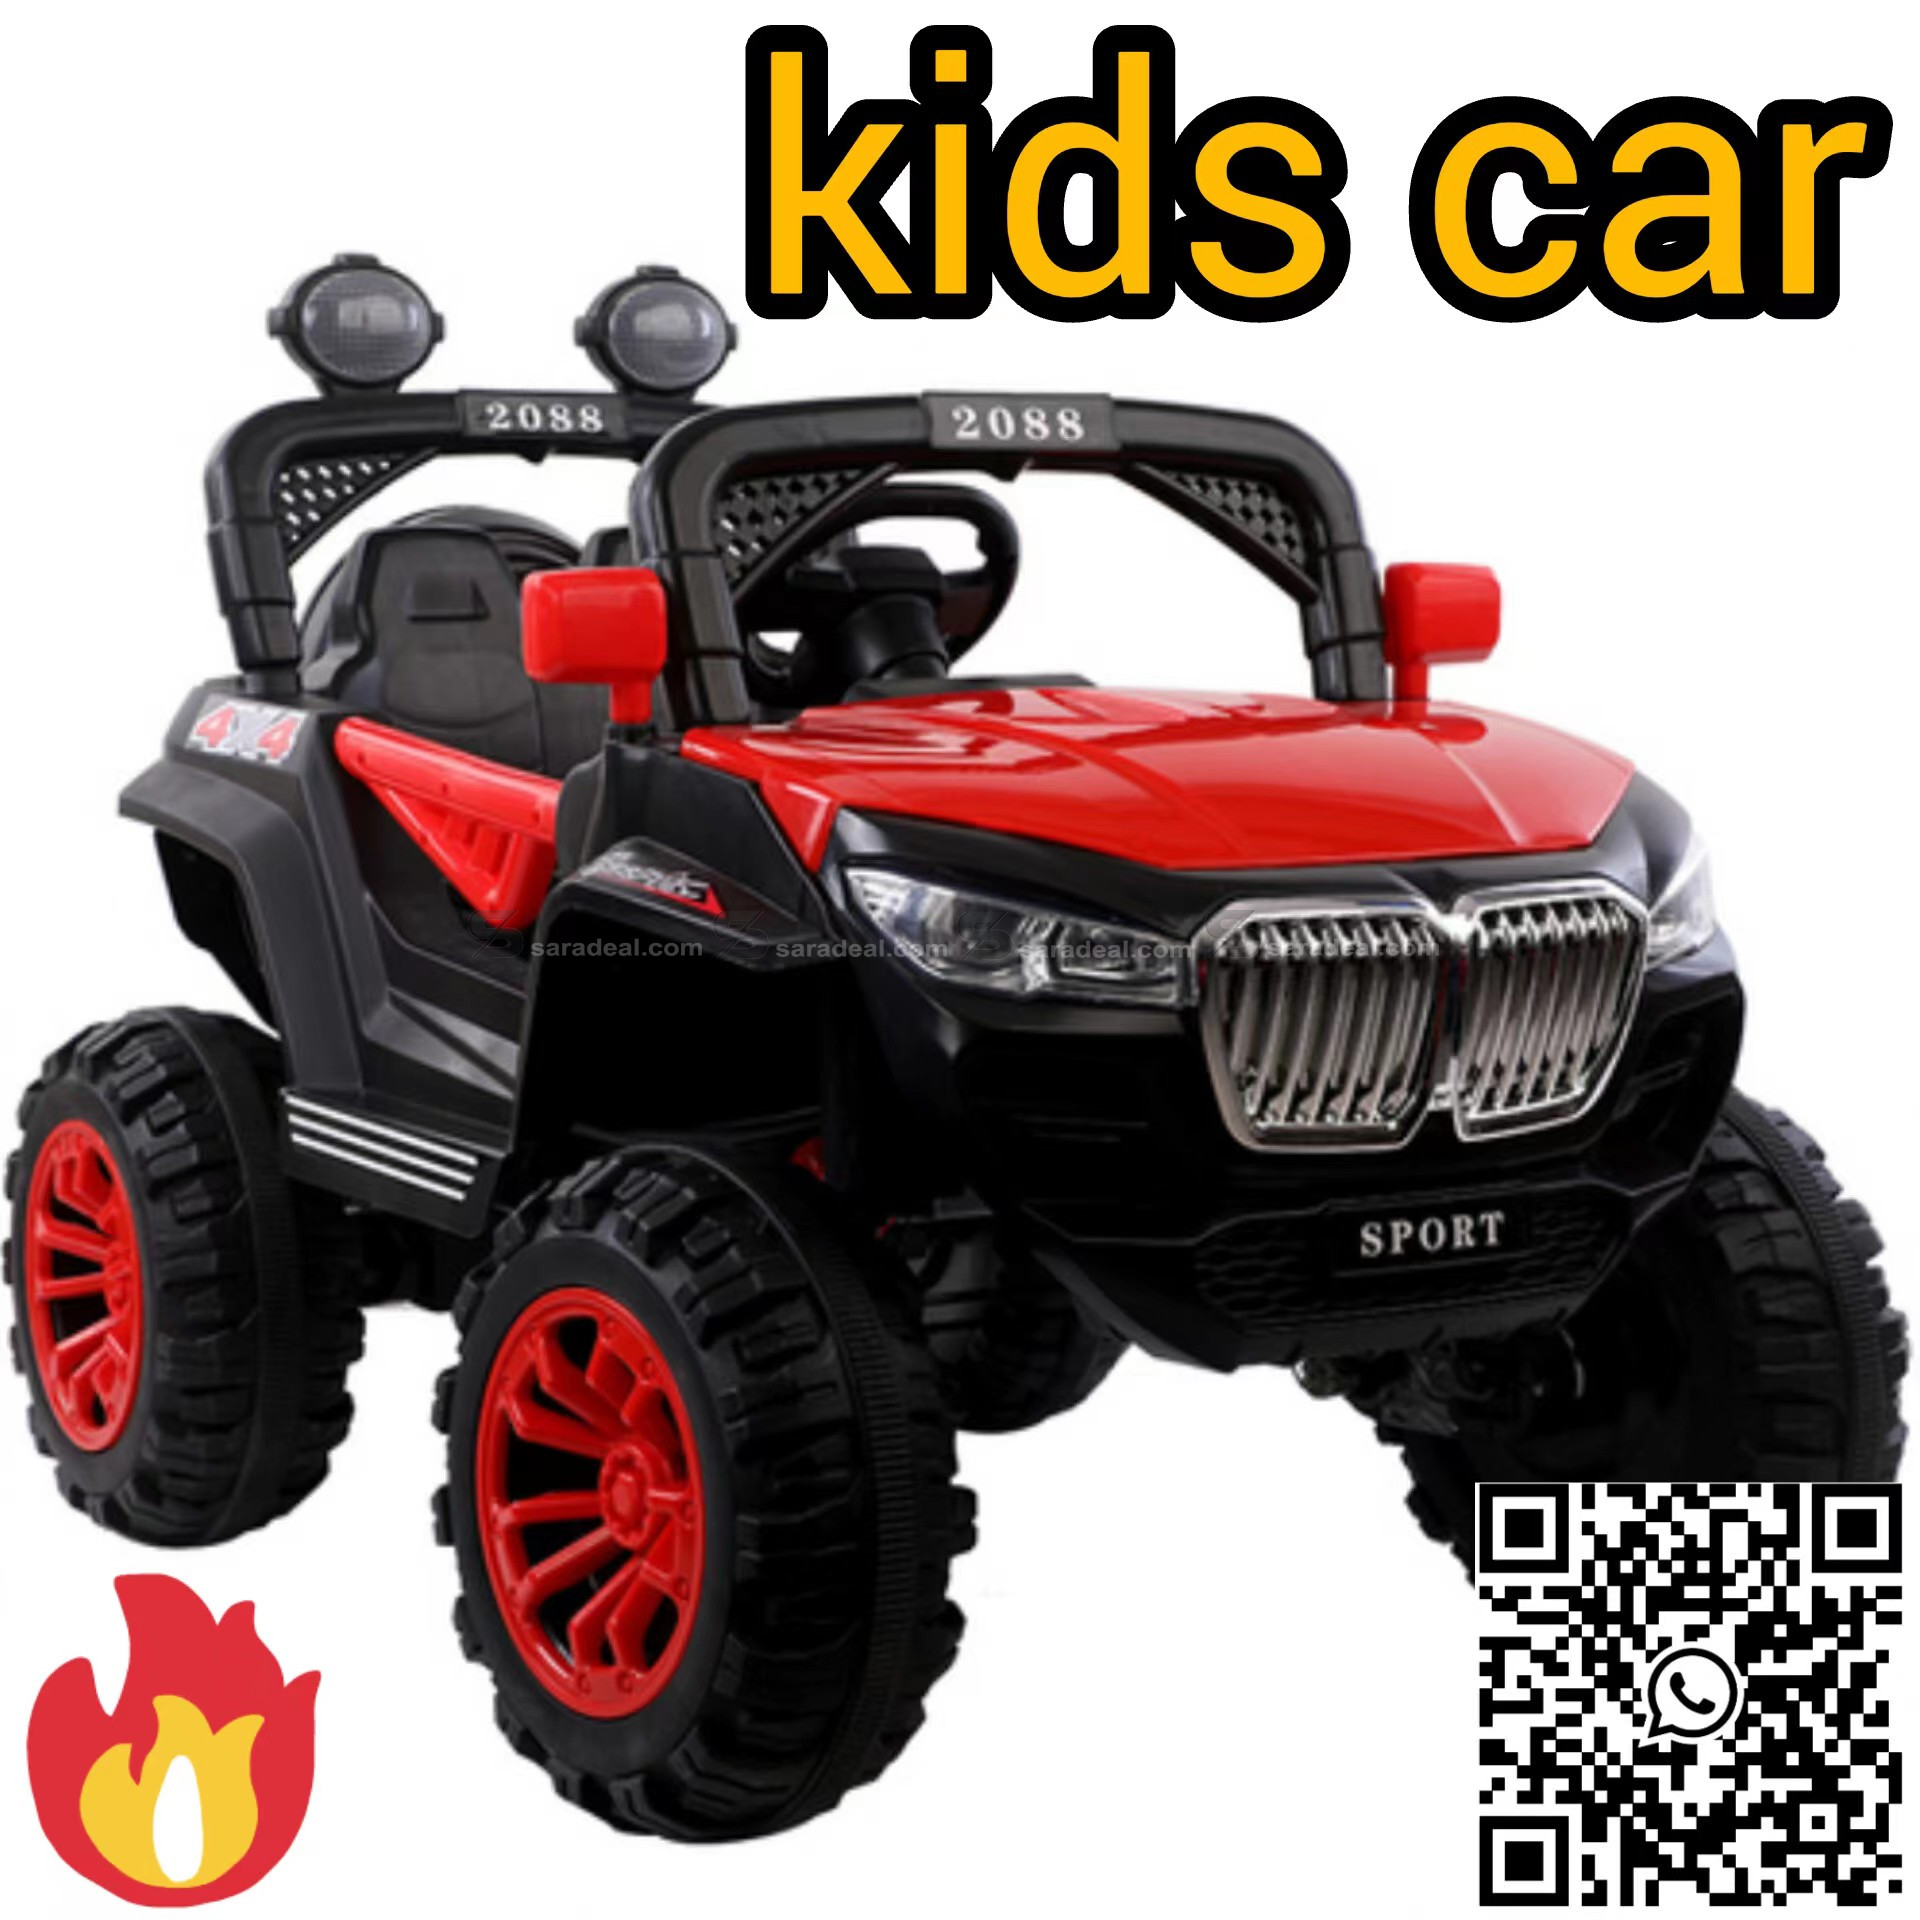 kids car provide sample